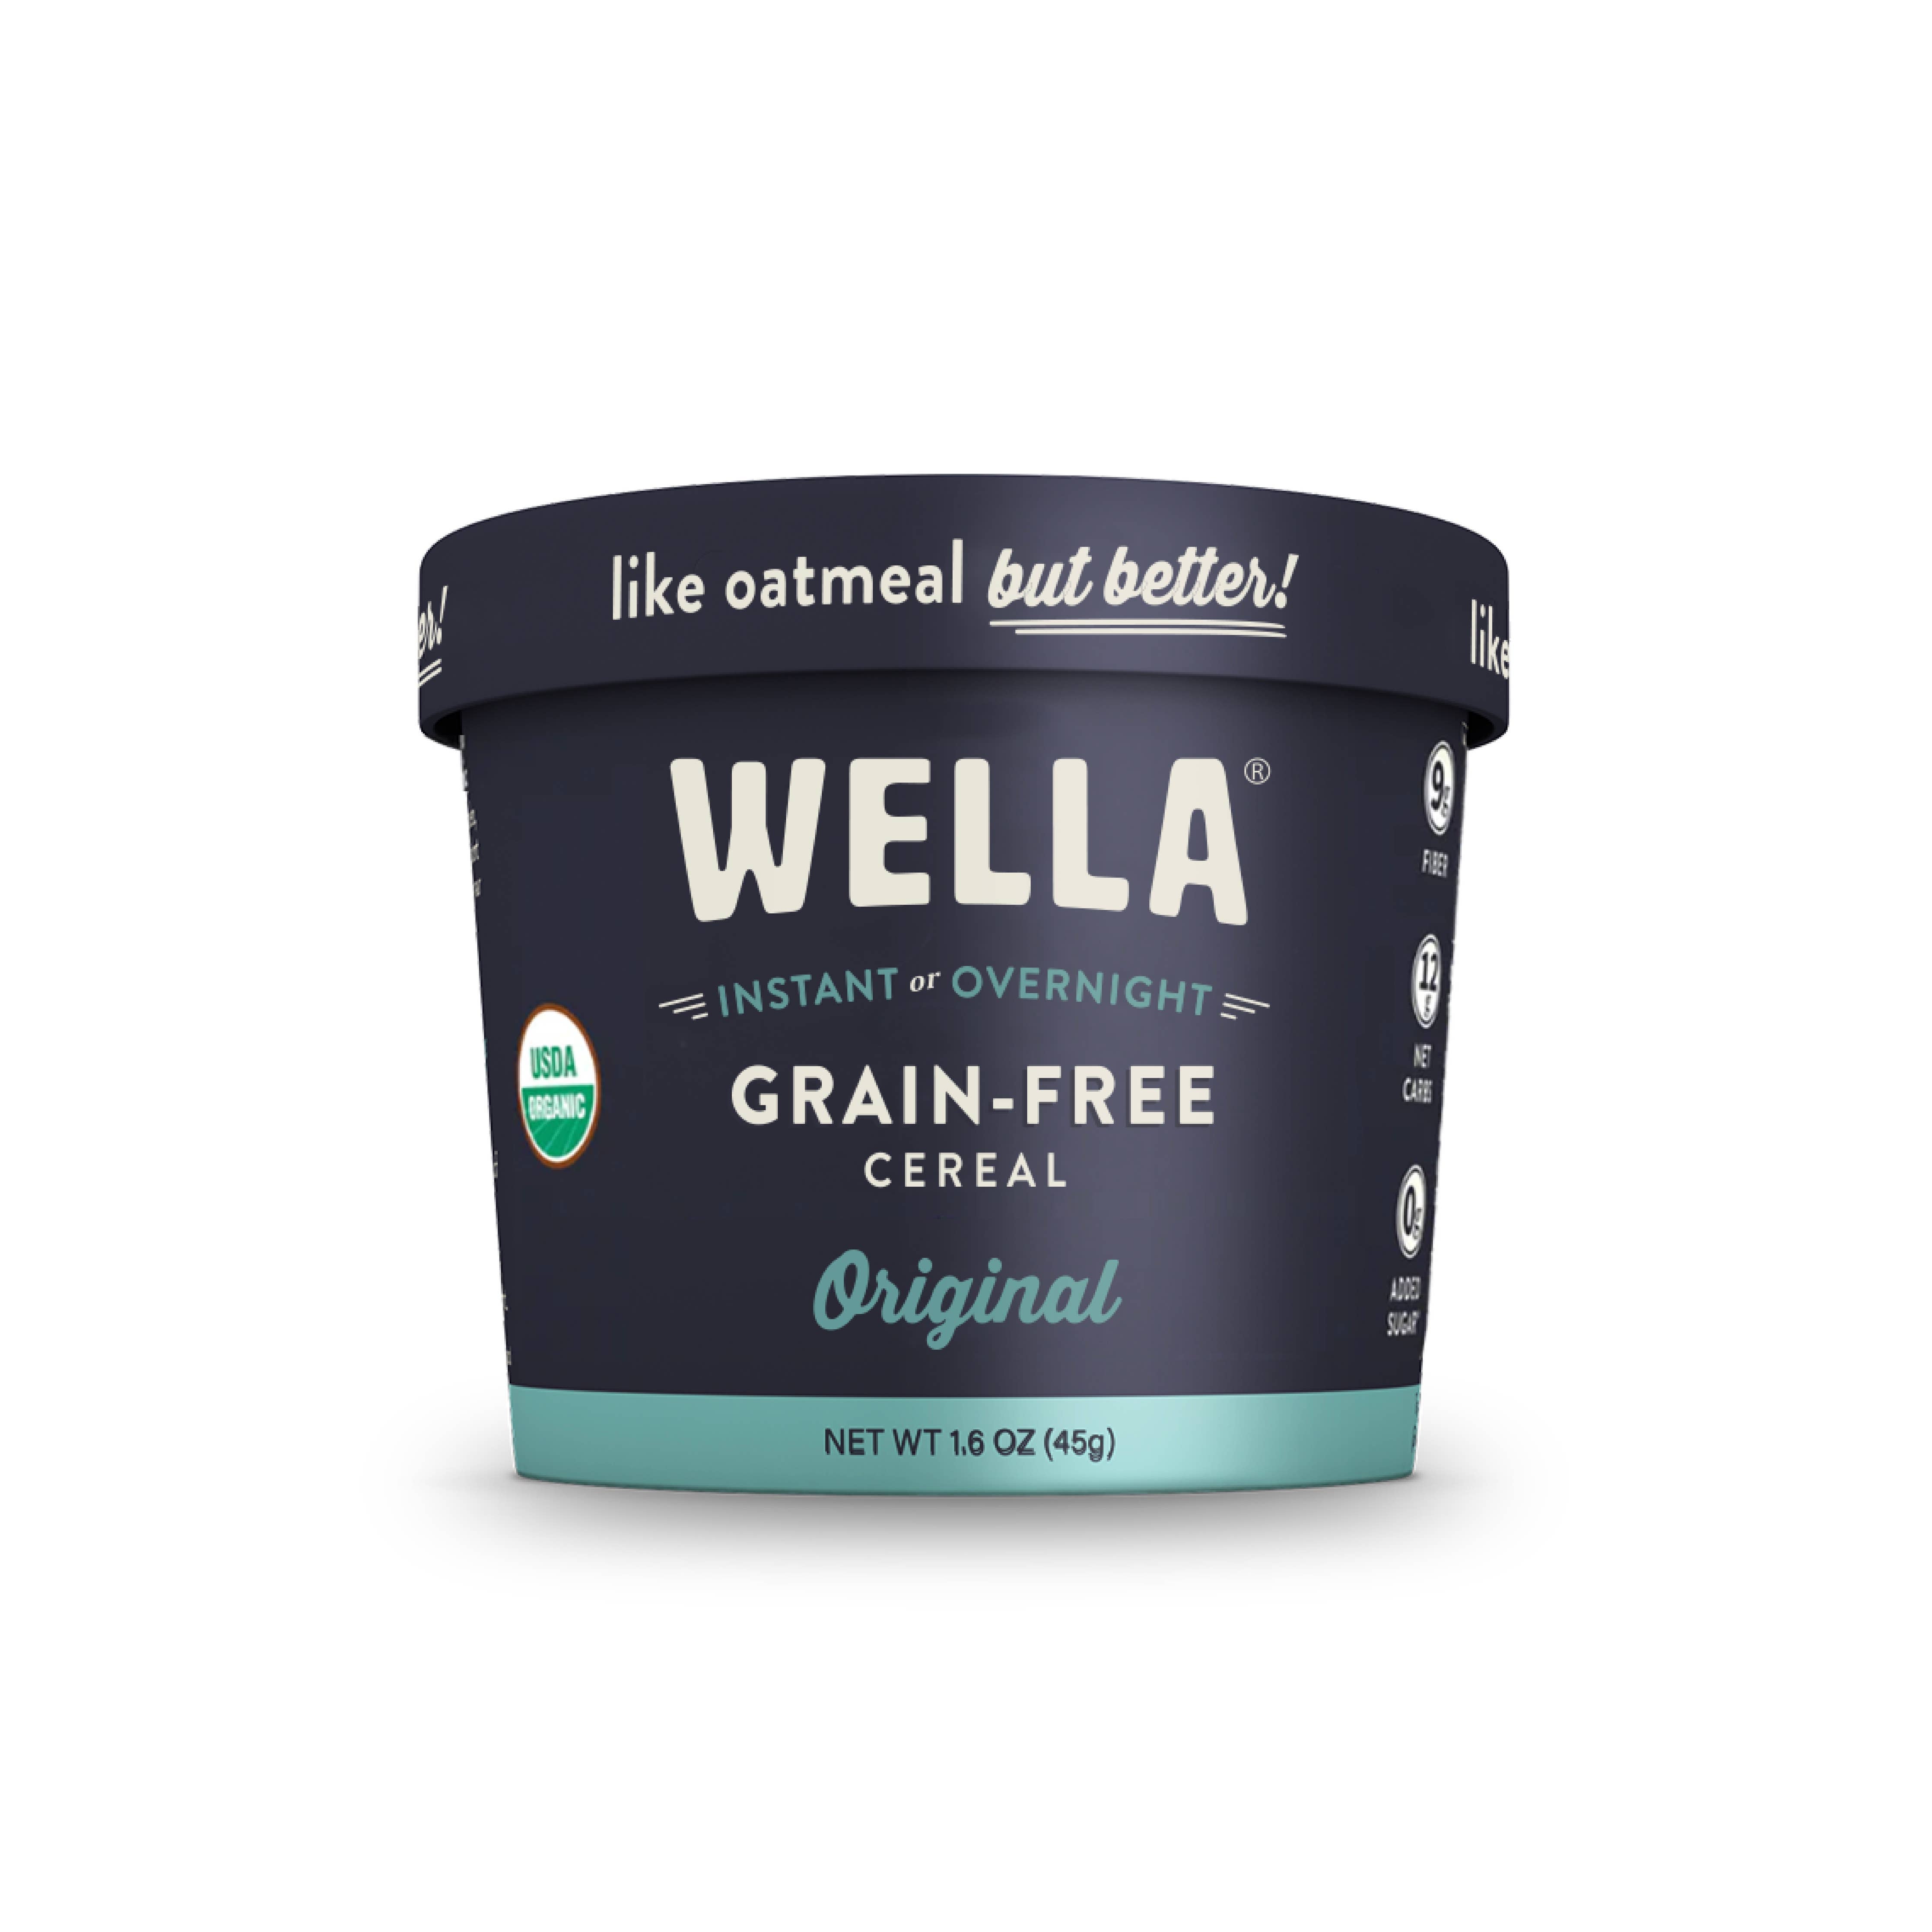 Wella Grain-Free Cereal Original Cup-1